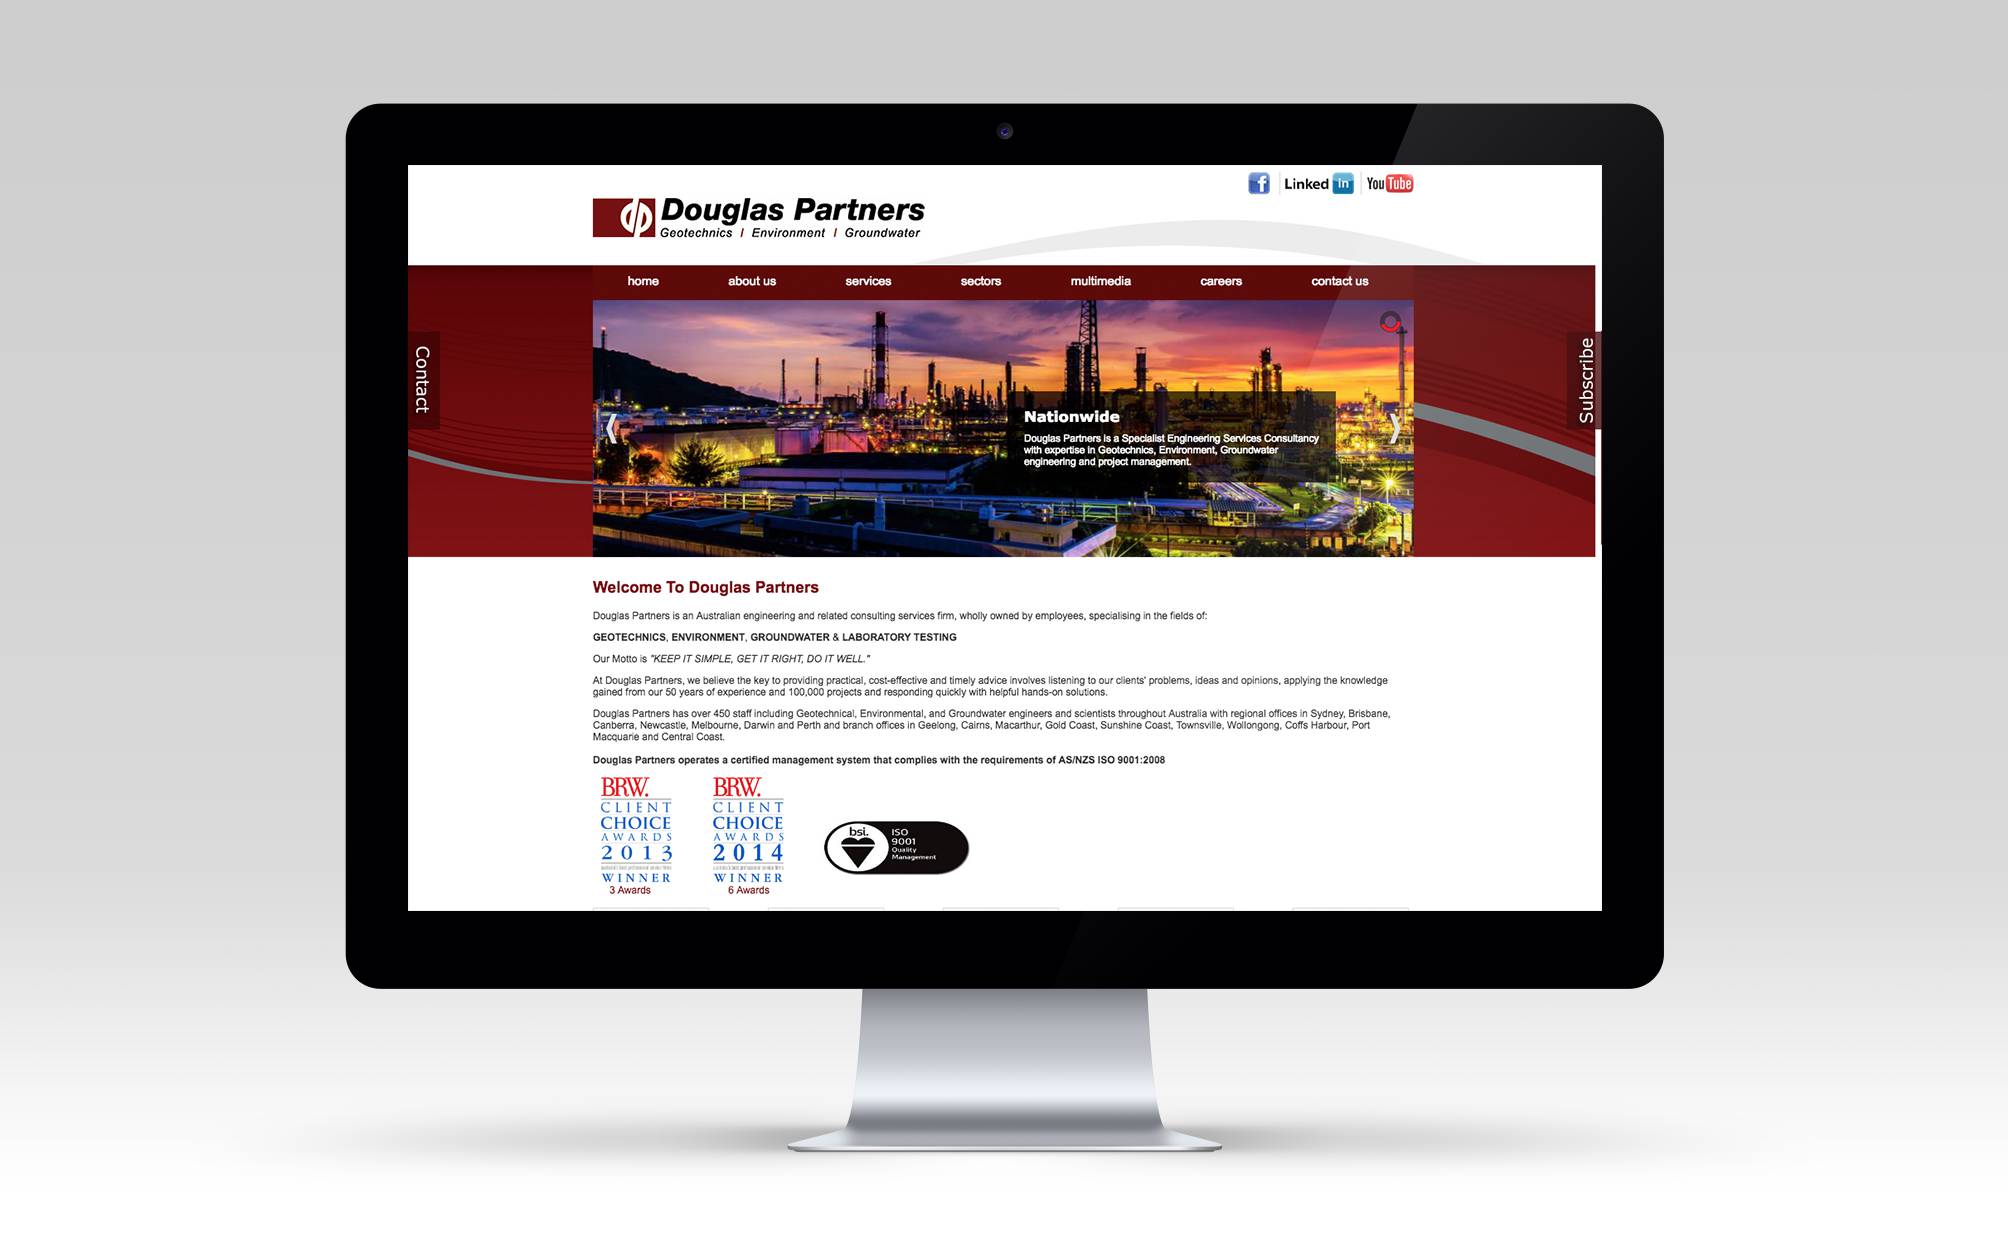 The original Douglas Partners website